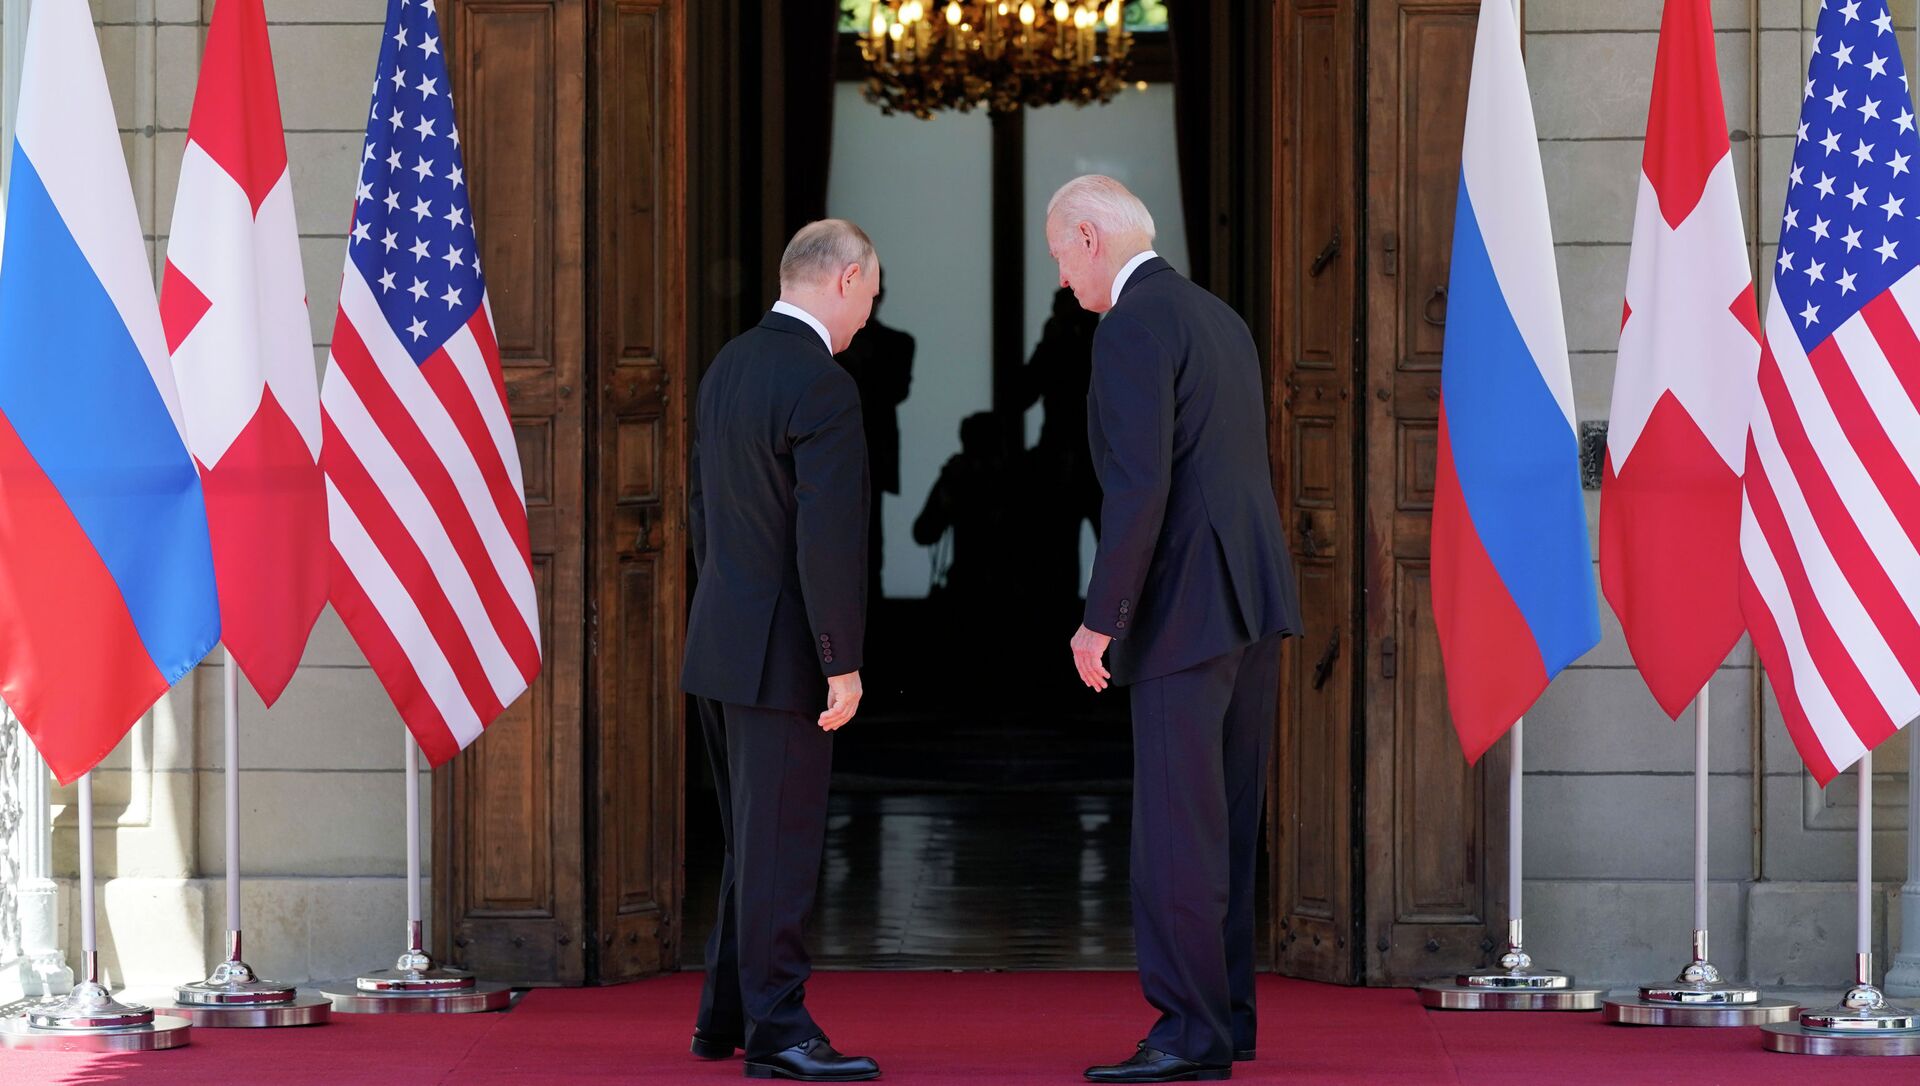 Президент США Джо Байден и президент России Владимир Путин встречаются на саммите США и России на вилле La Grange в Женеве, Швейцария. 16 июня 2021 года - Sputnik Кыргызстан, 1920, 17.06.2021